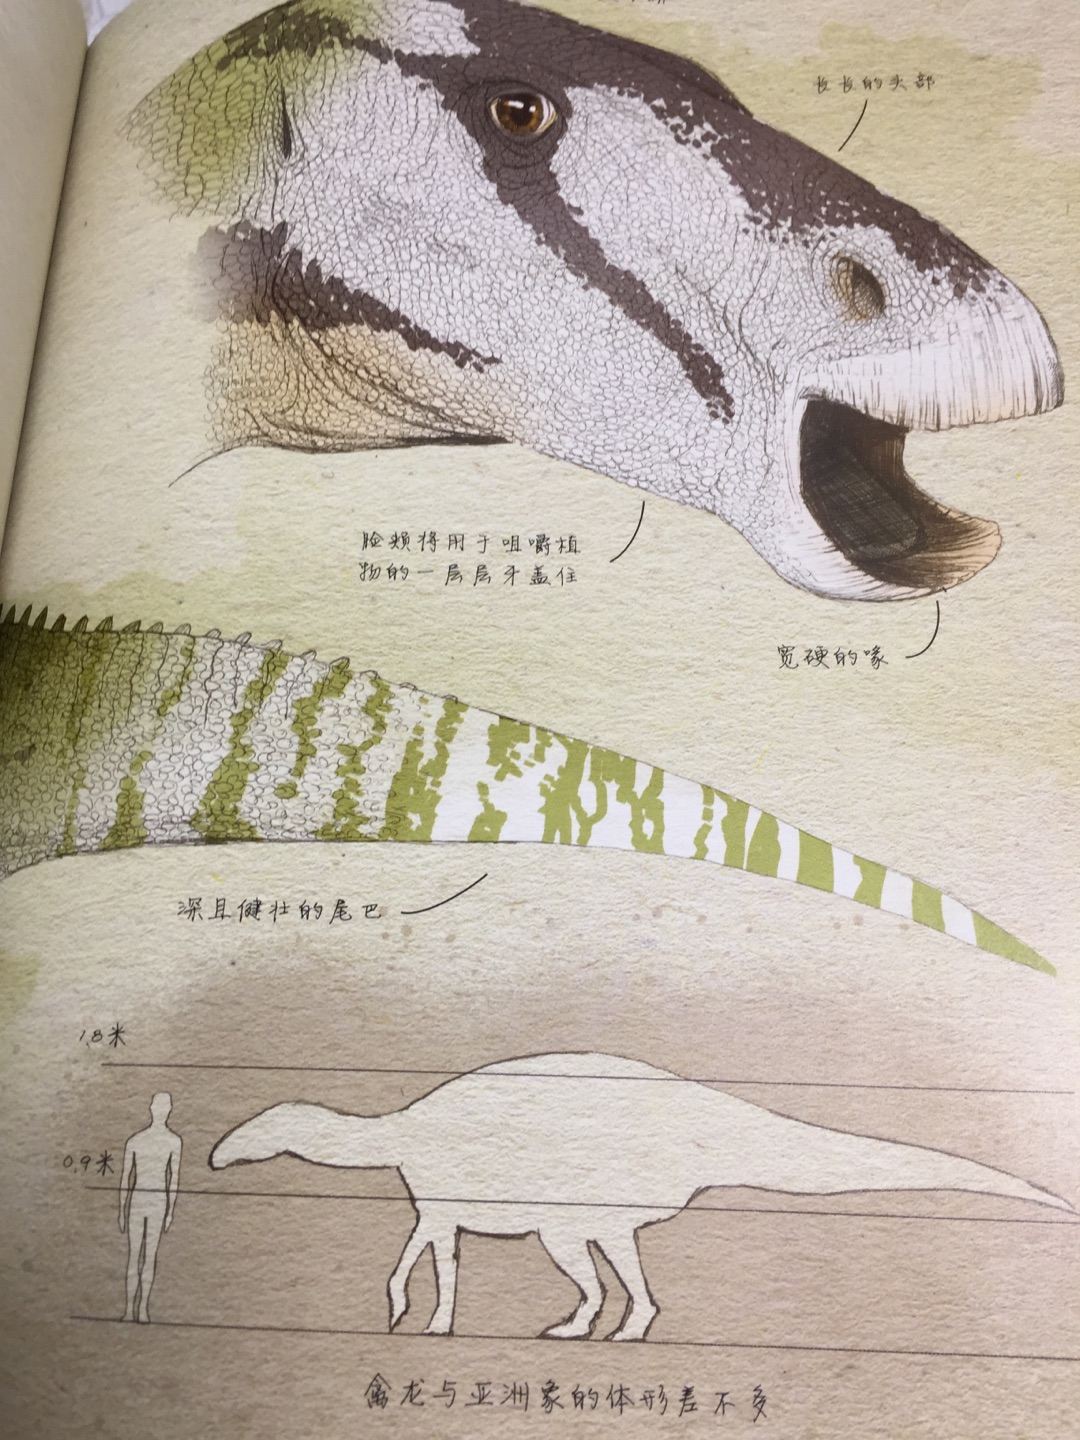 如果你看过《侏罗纪公园》系列电影，一定会对这些曾经主宰地球的庞然大物印象深刻。事实上，恐龙的形态、分类非常丰富，既有比7层楼还高的蜥脚类，也有与老鹰差不多大的兽脚类，有全身都被羽毛覆盖的华丽羽王龙，有拥有看不见尽头的长脖子的波塞冬龙。想象一下看到活的、正在呼吸的恐龙会怎么样？本书将当前的古生物发现与高精度的绘图相结合，带领读者展开时光旅行，比以往任何时候更接近史前生物。回到1.2亿年前广阔的森林和无尽的沙漠。想象一下与早期鸟类一起飞行，躲过凶恶的二足捕食者，与一群吃叶子的庞然大物走在一起。拥有这本古生物学家的笔记，年轻的读者可以获得许多白垩纪早期恐龙的第一手资料，深入了解这些曾经生活在地球上的不可思议的生物。